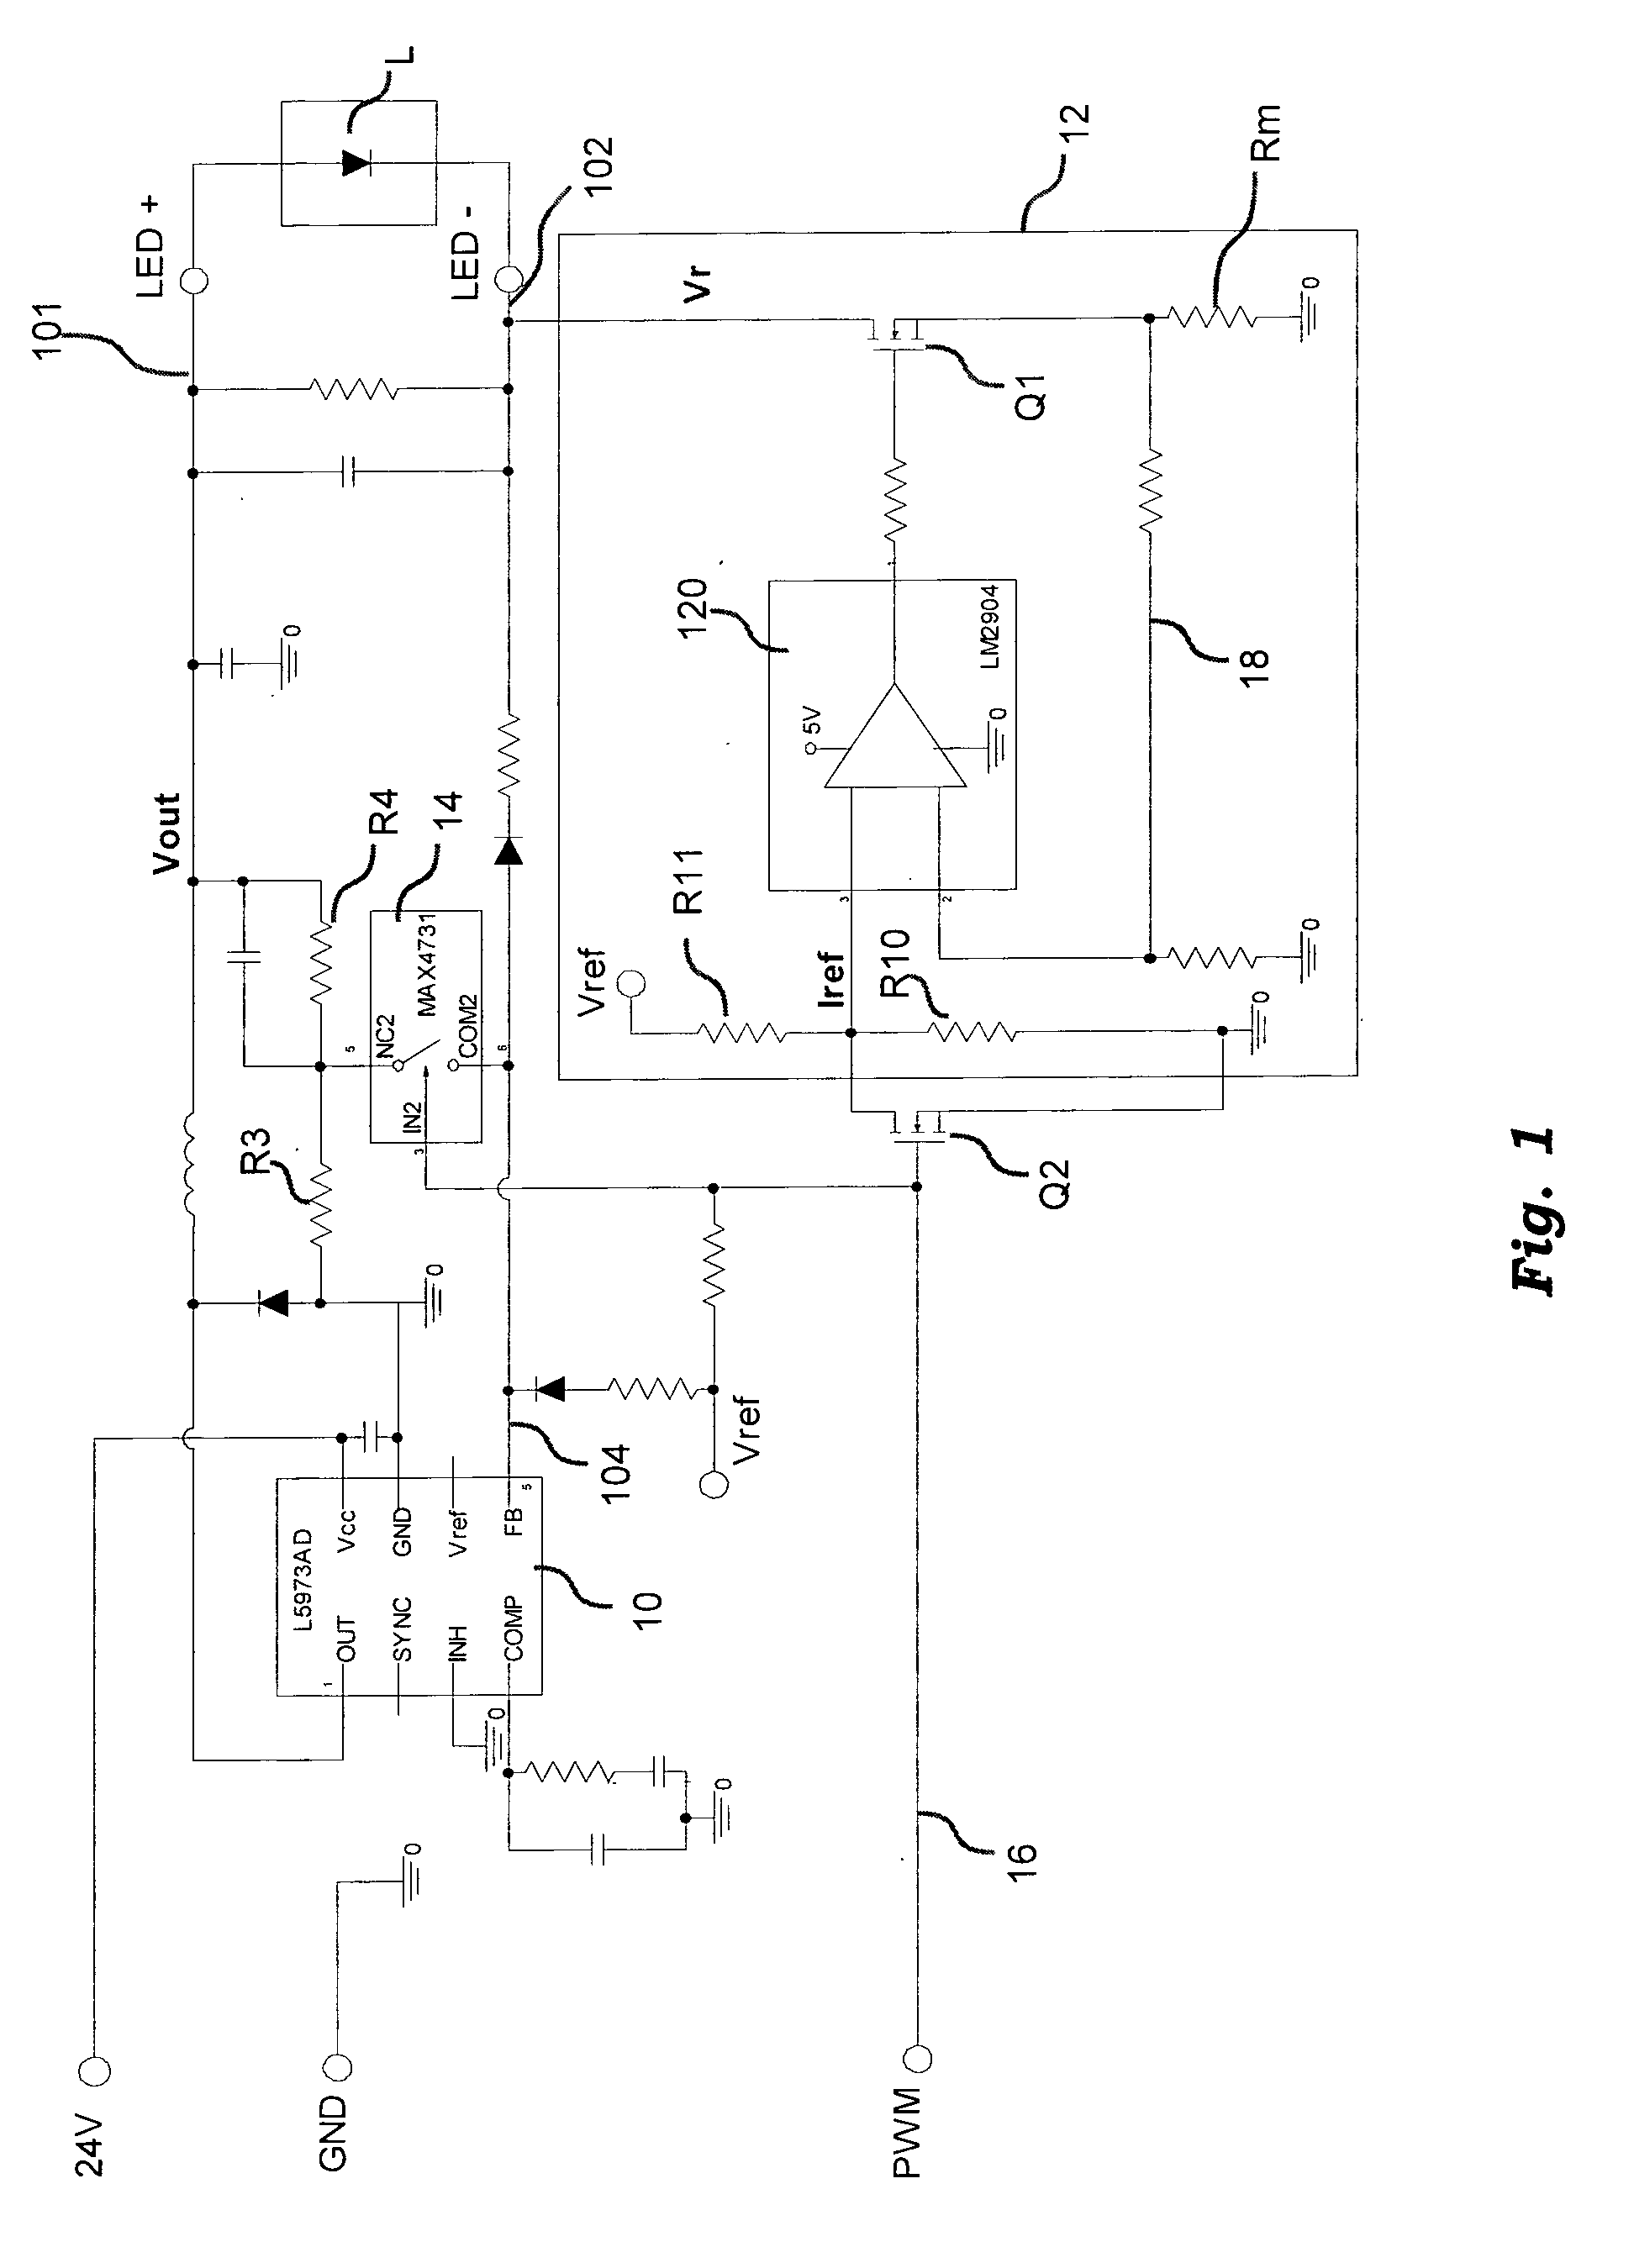 Driver arrangement for light emitting diodes